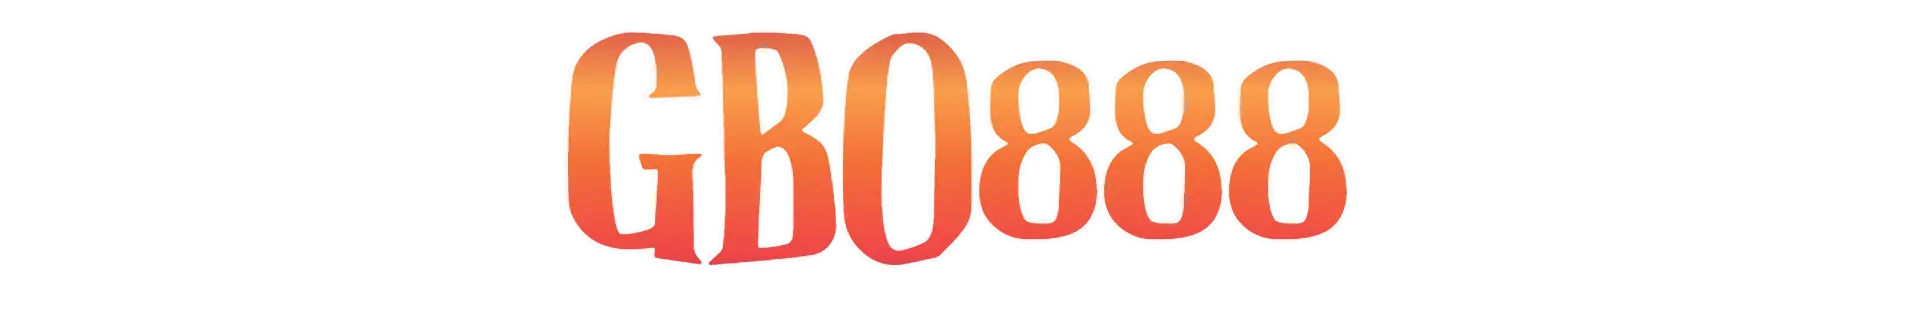 GBO888